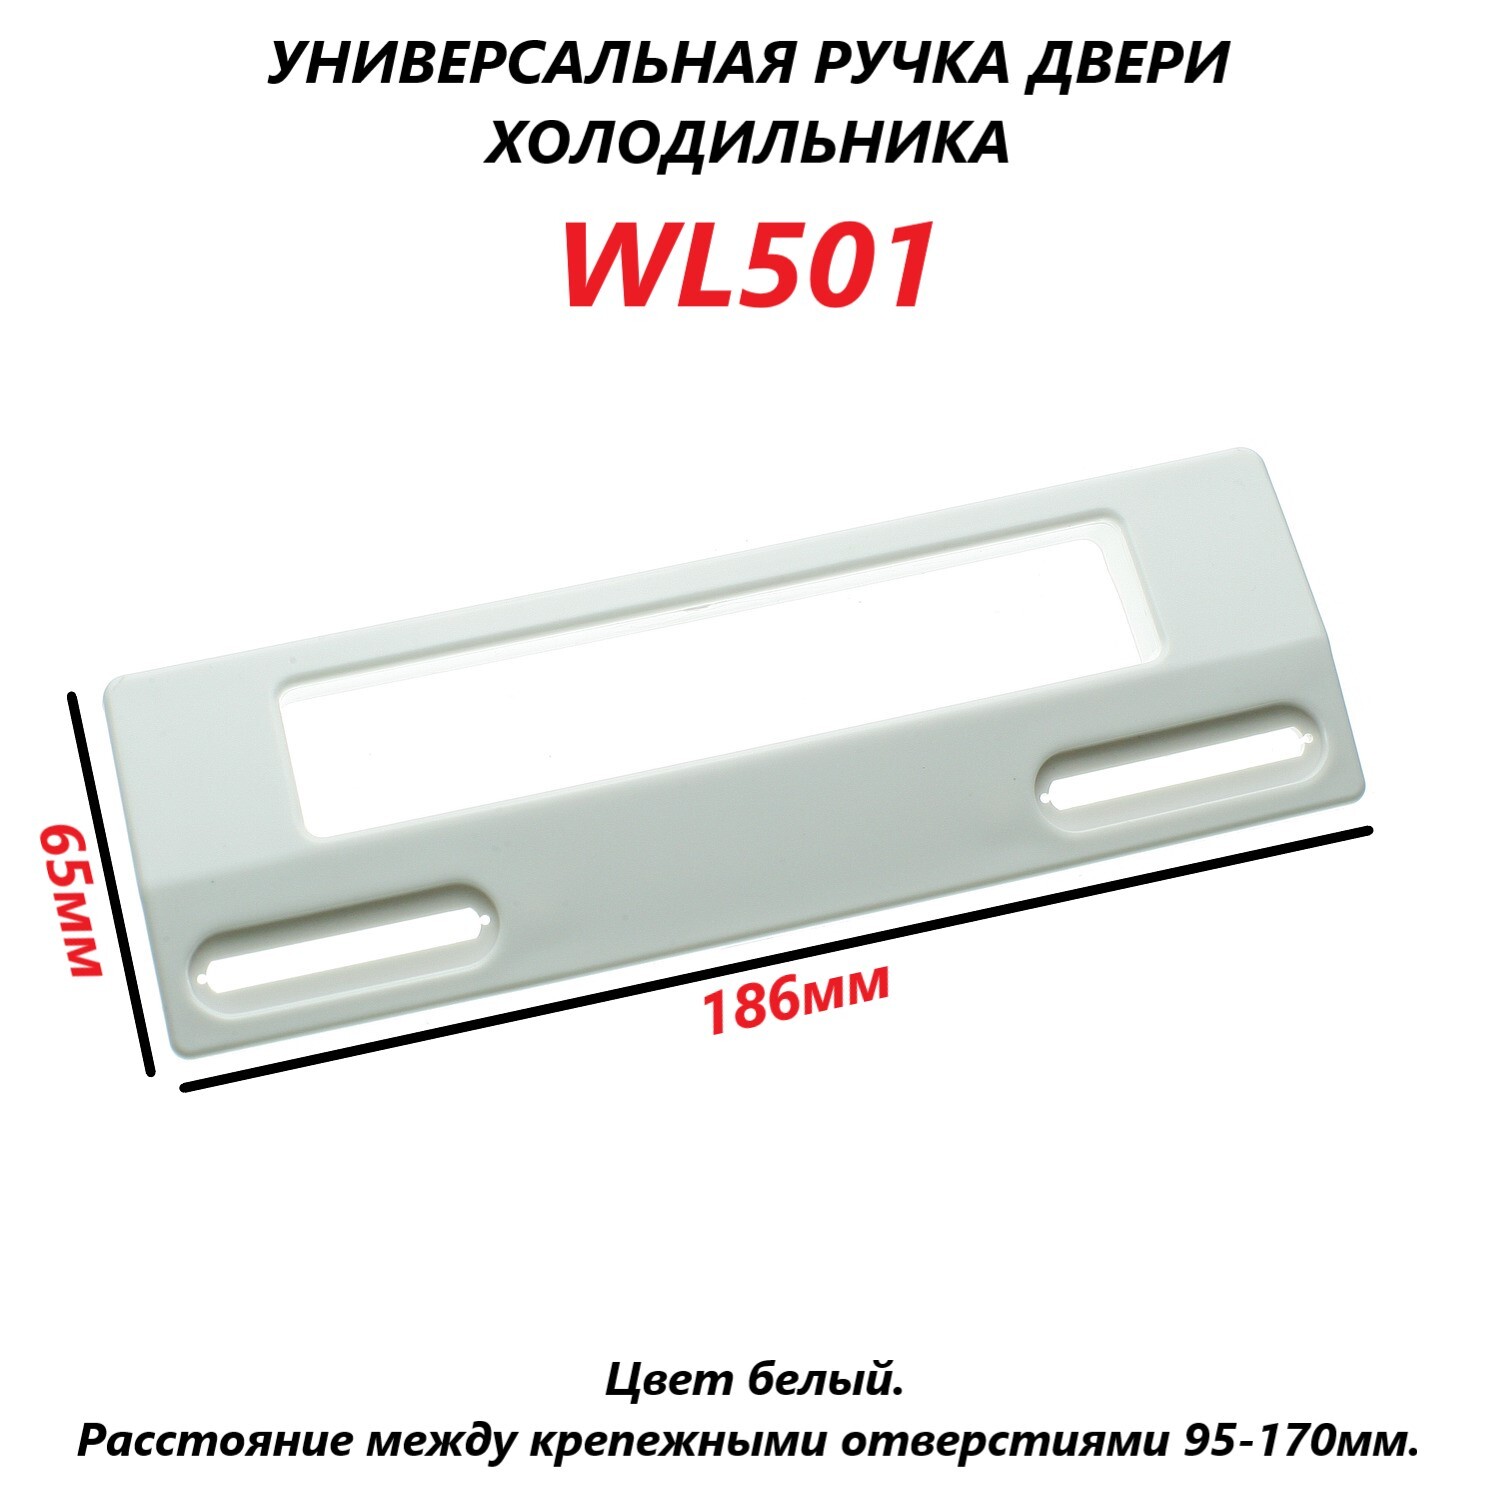 Ручка двери холодильника универсальная wl501